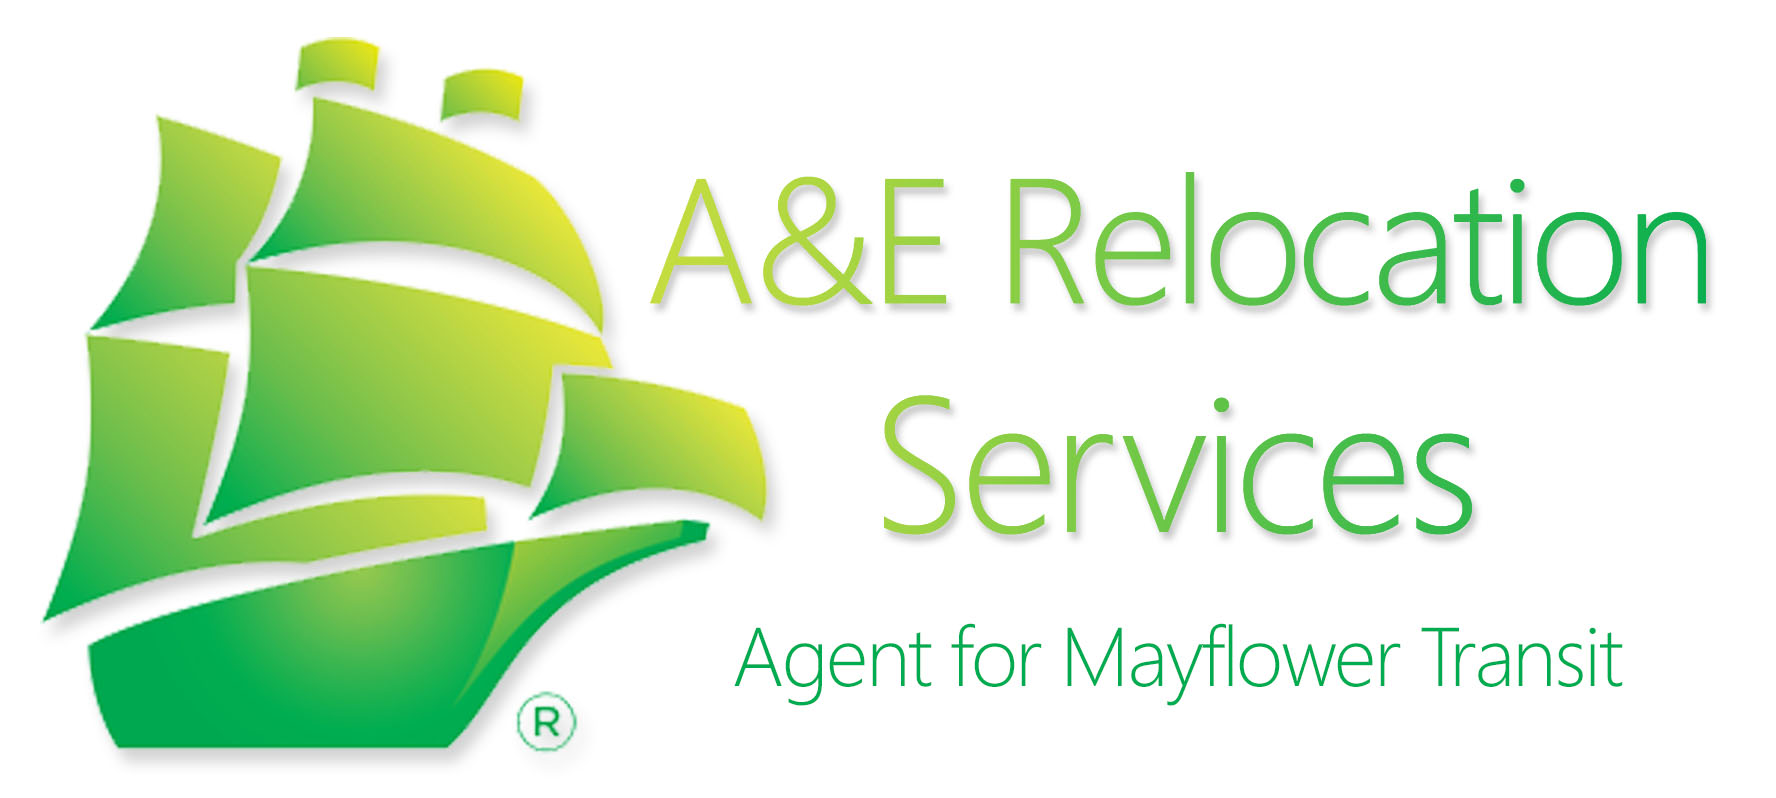 A&E Relocation Services